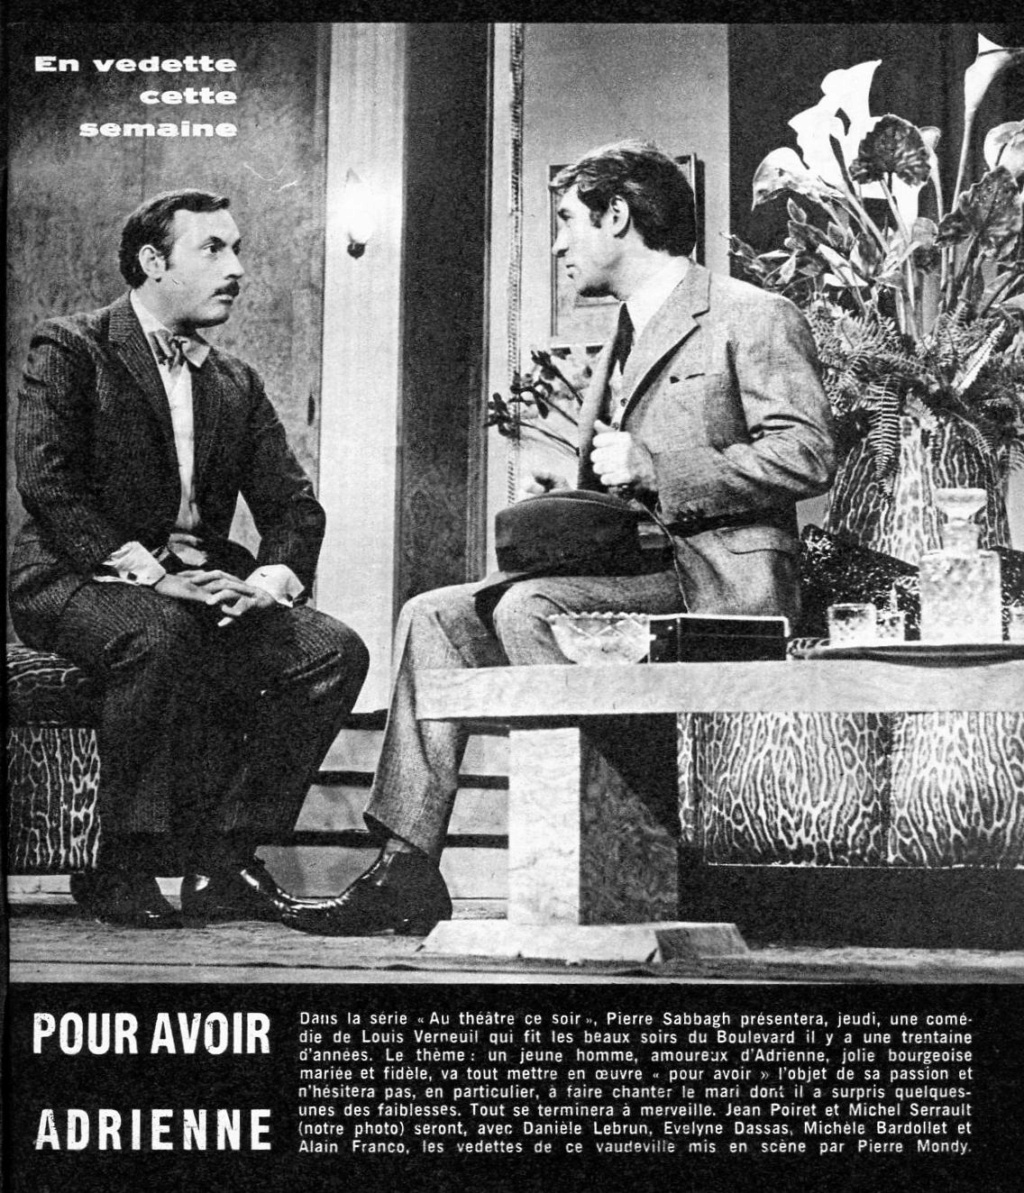 juillet - 20 juillet 1967: Au théâtre ce soir - POUR AVOIR ADRIENNE 0832